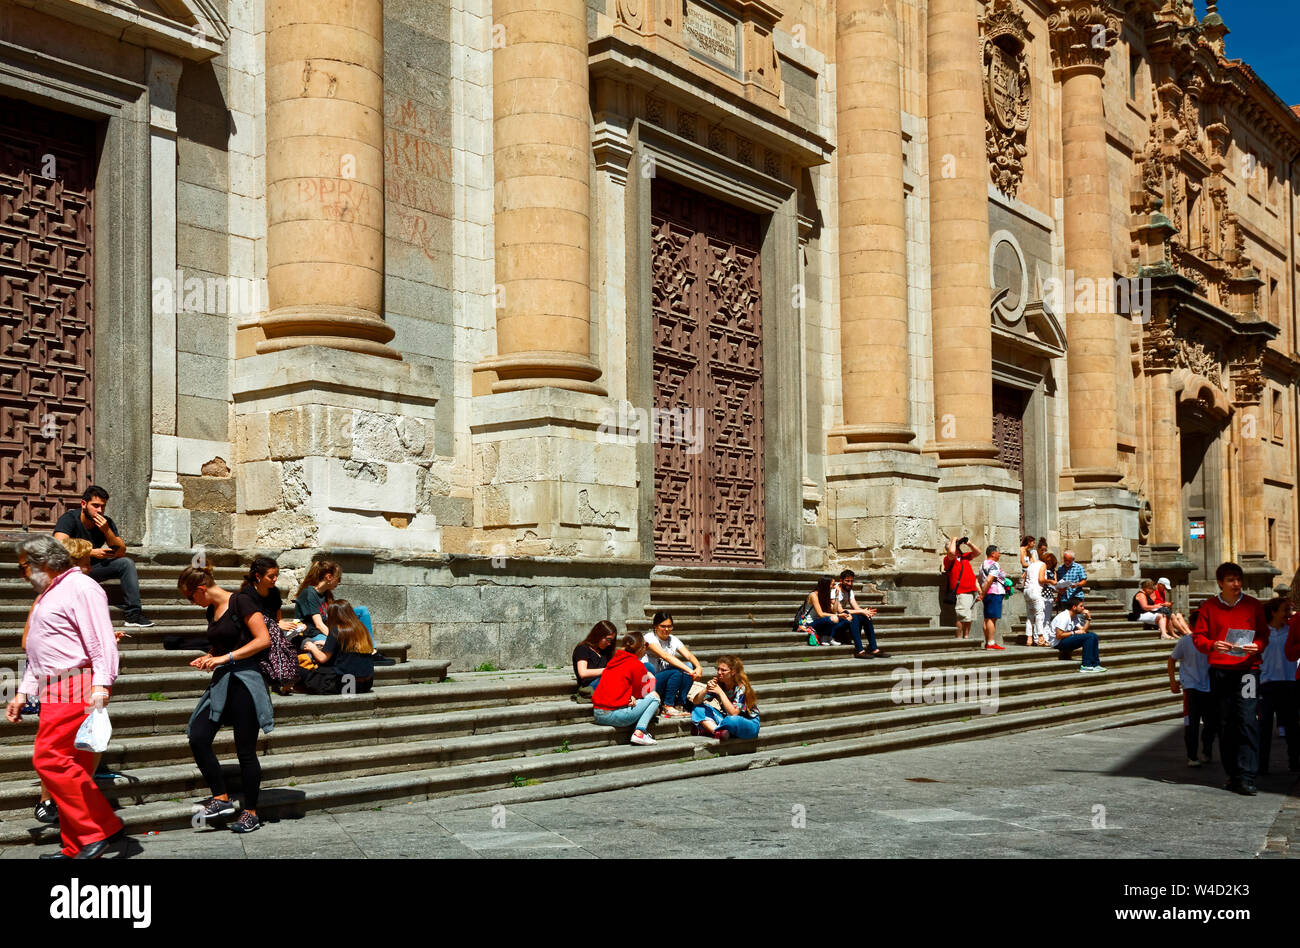 La Clerecia, barocco, precedentemente noto come il gesuita, 18 secolo, scena cittadina; persone sui gradini, ornati, vecchio edificio; della Pontificia Università di Salamanca, UNESC Foto Stock